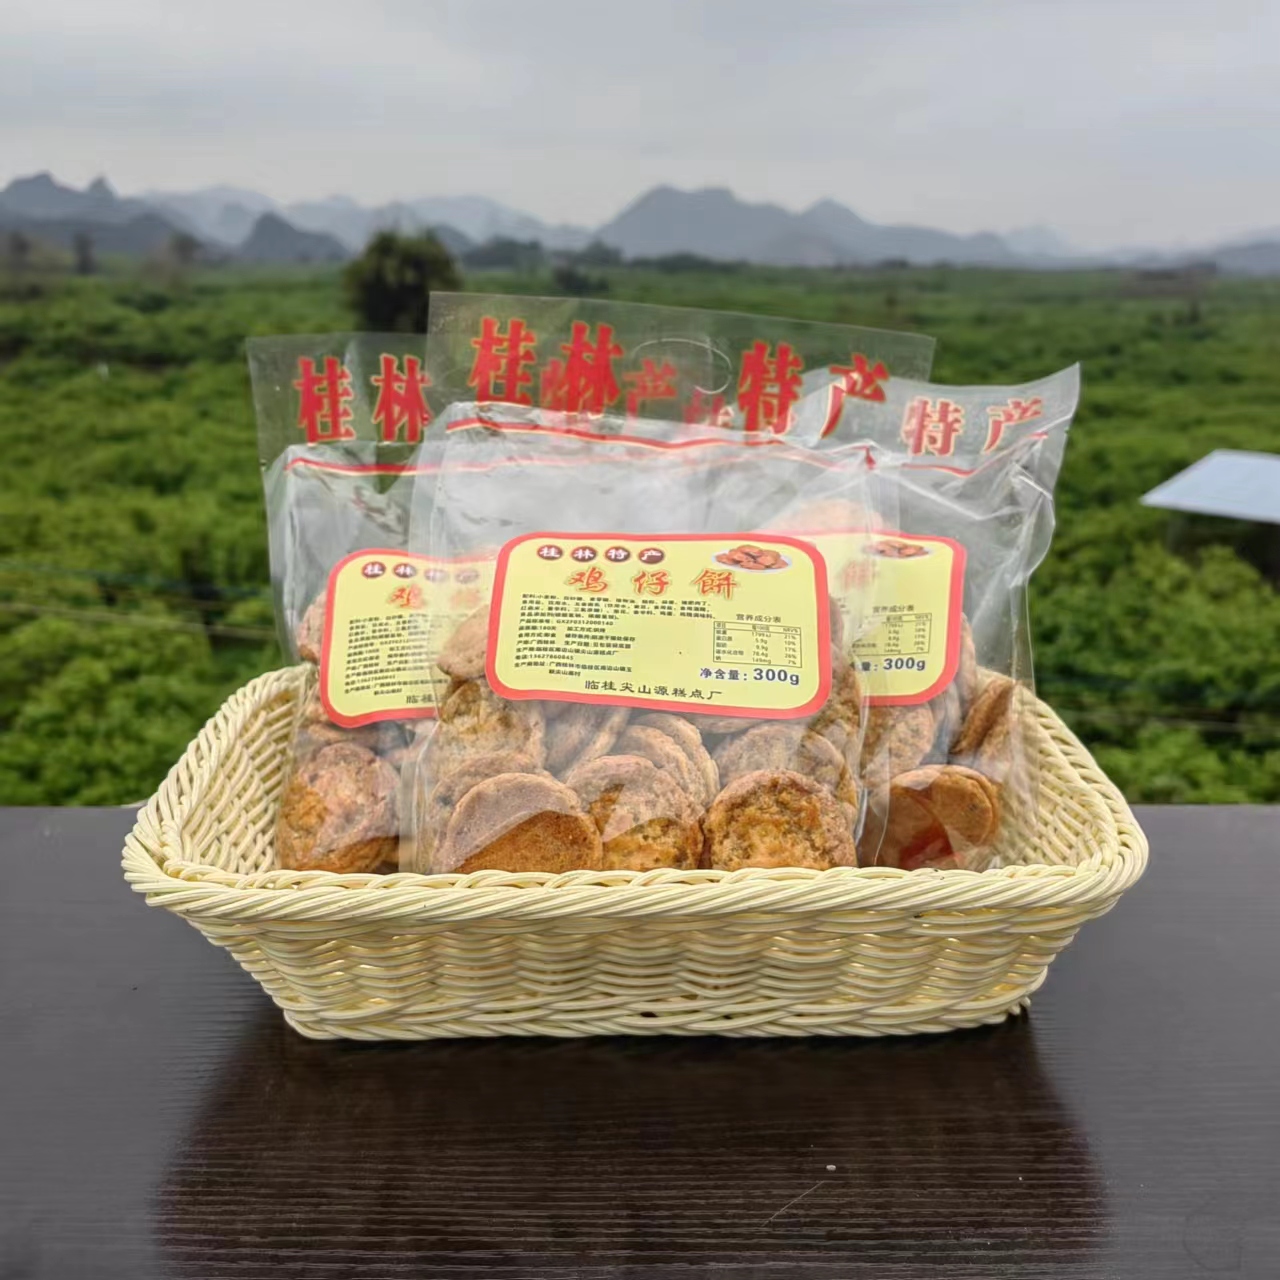 广西桂林香葱鸡仔饼干香酥脆硬口味正宗广式传统特产零食散装手工